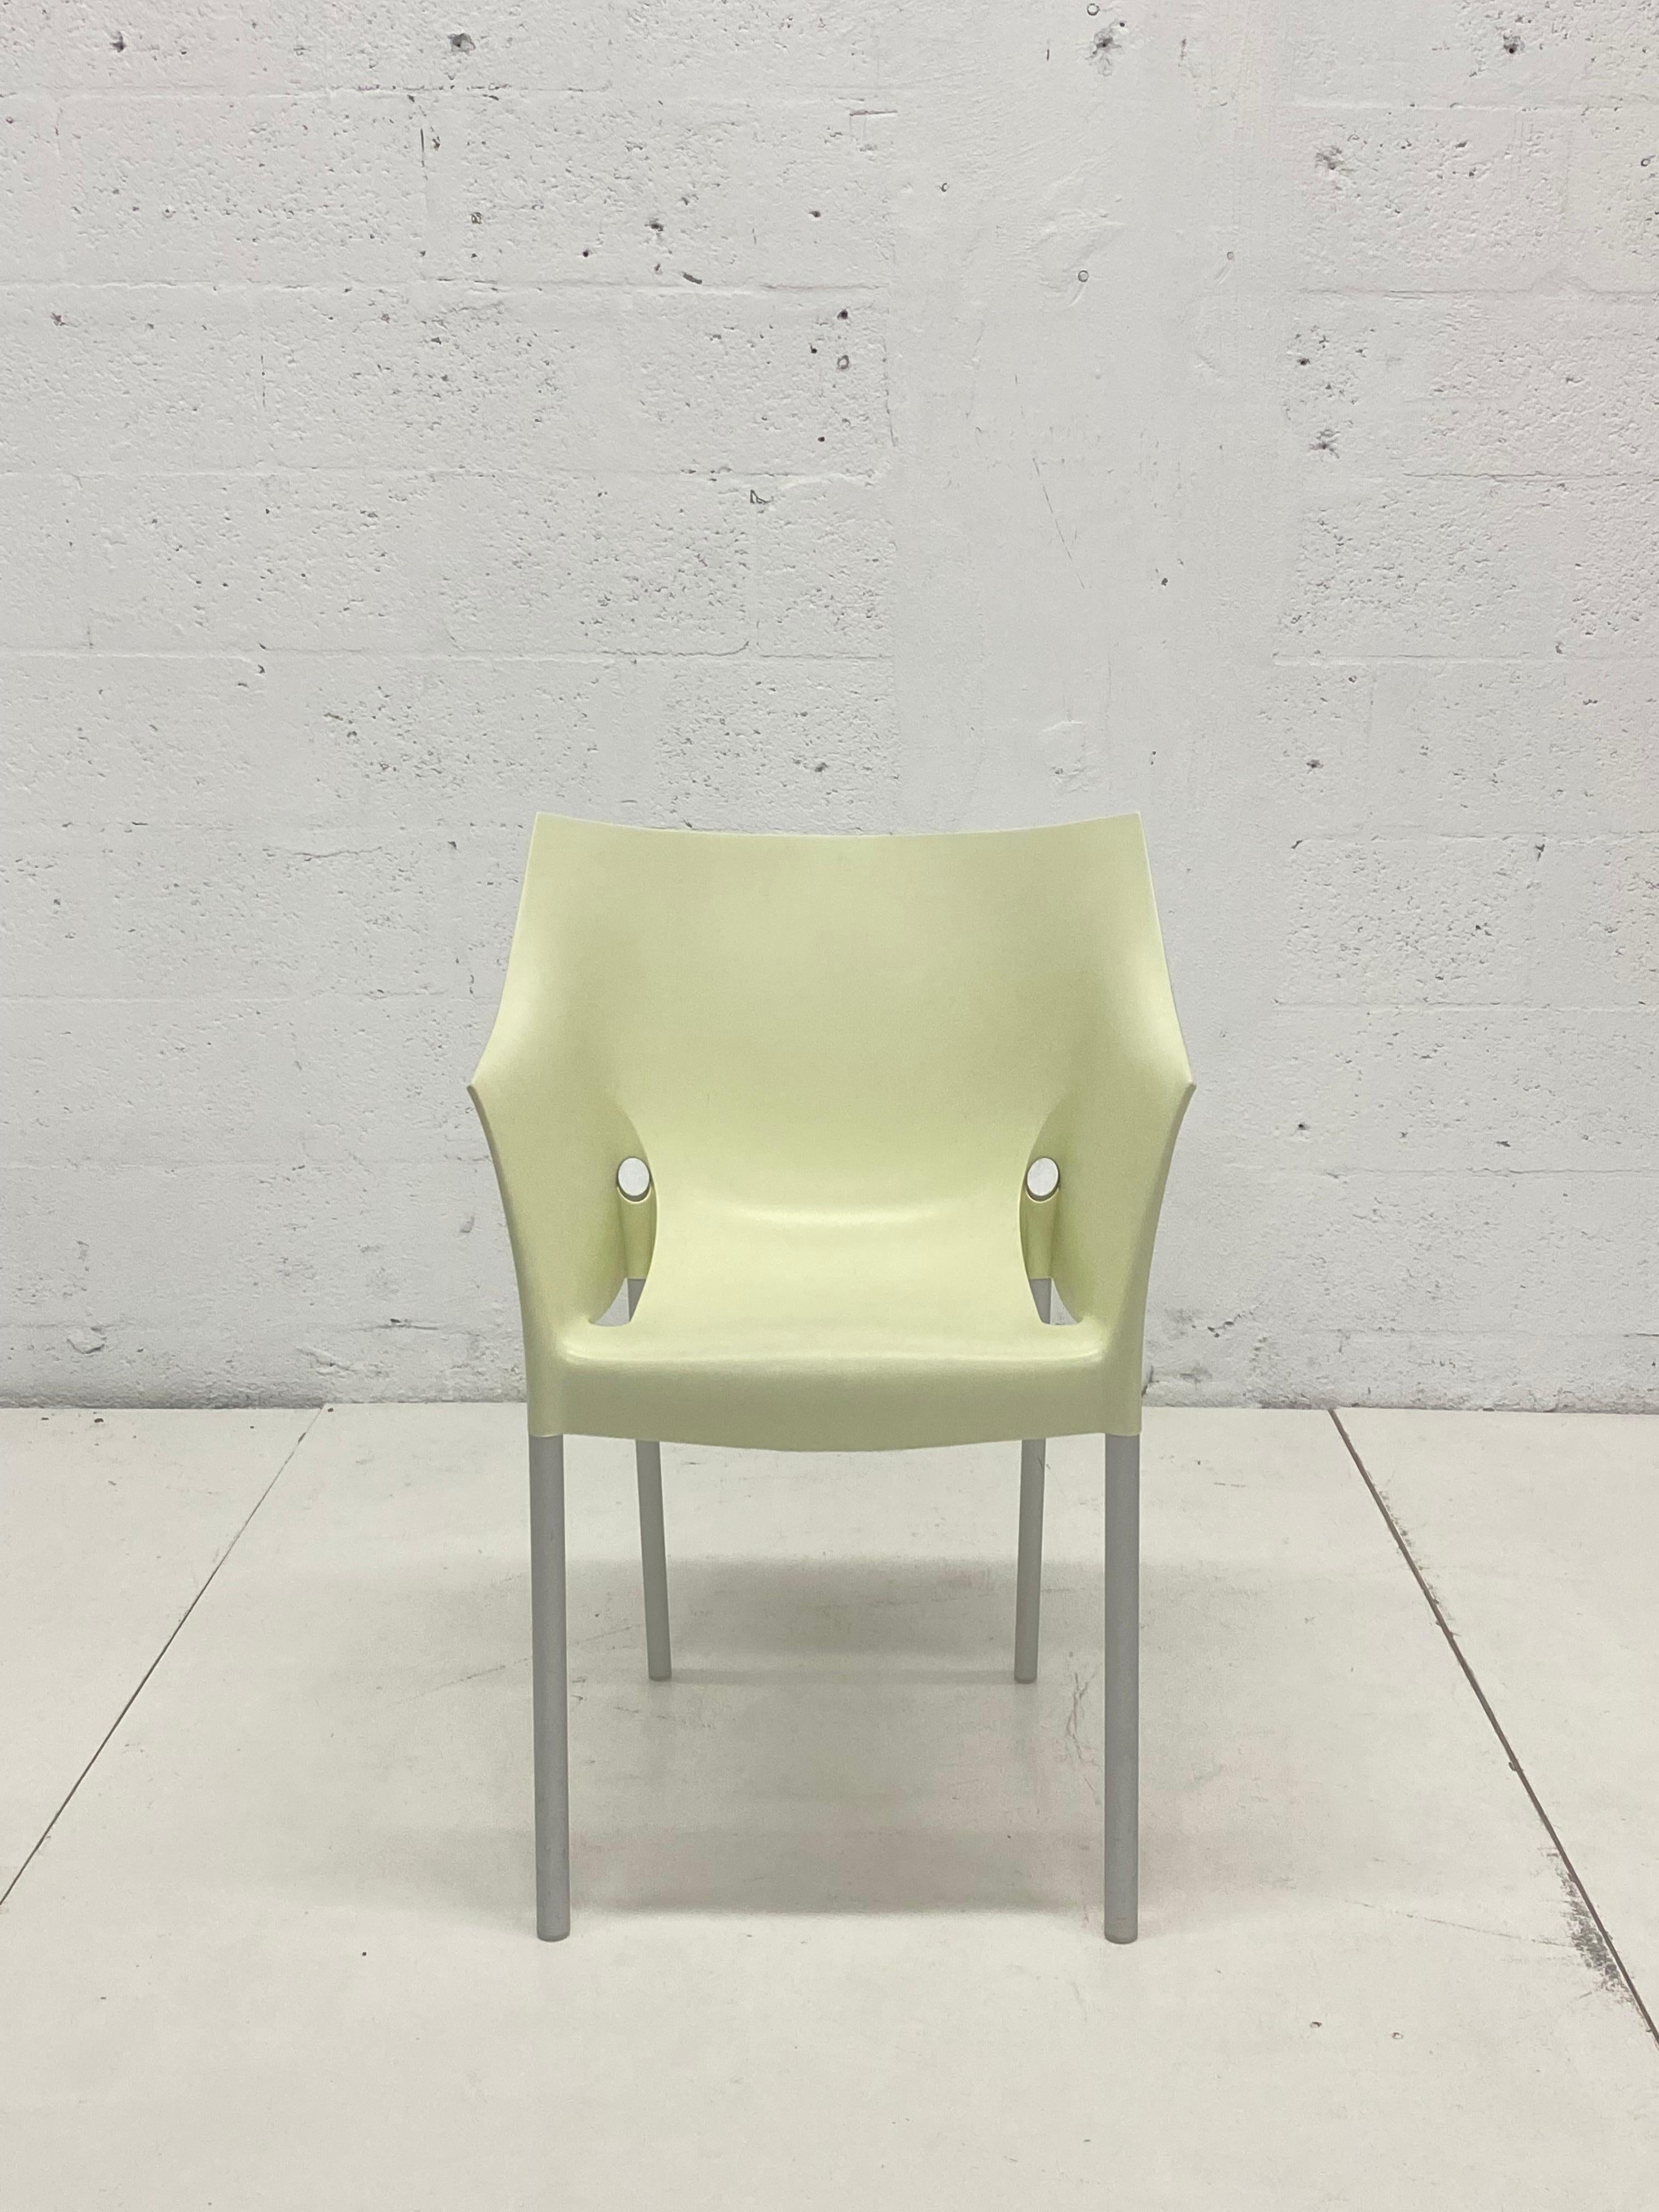 Chaise Dr. No de couleur crème avec des pieds en aluminium, créée par Philippe Starck et produite par Kartell, Italie.